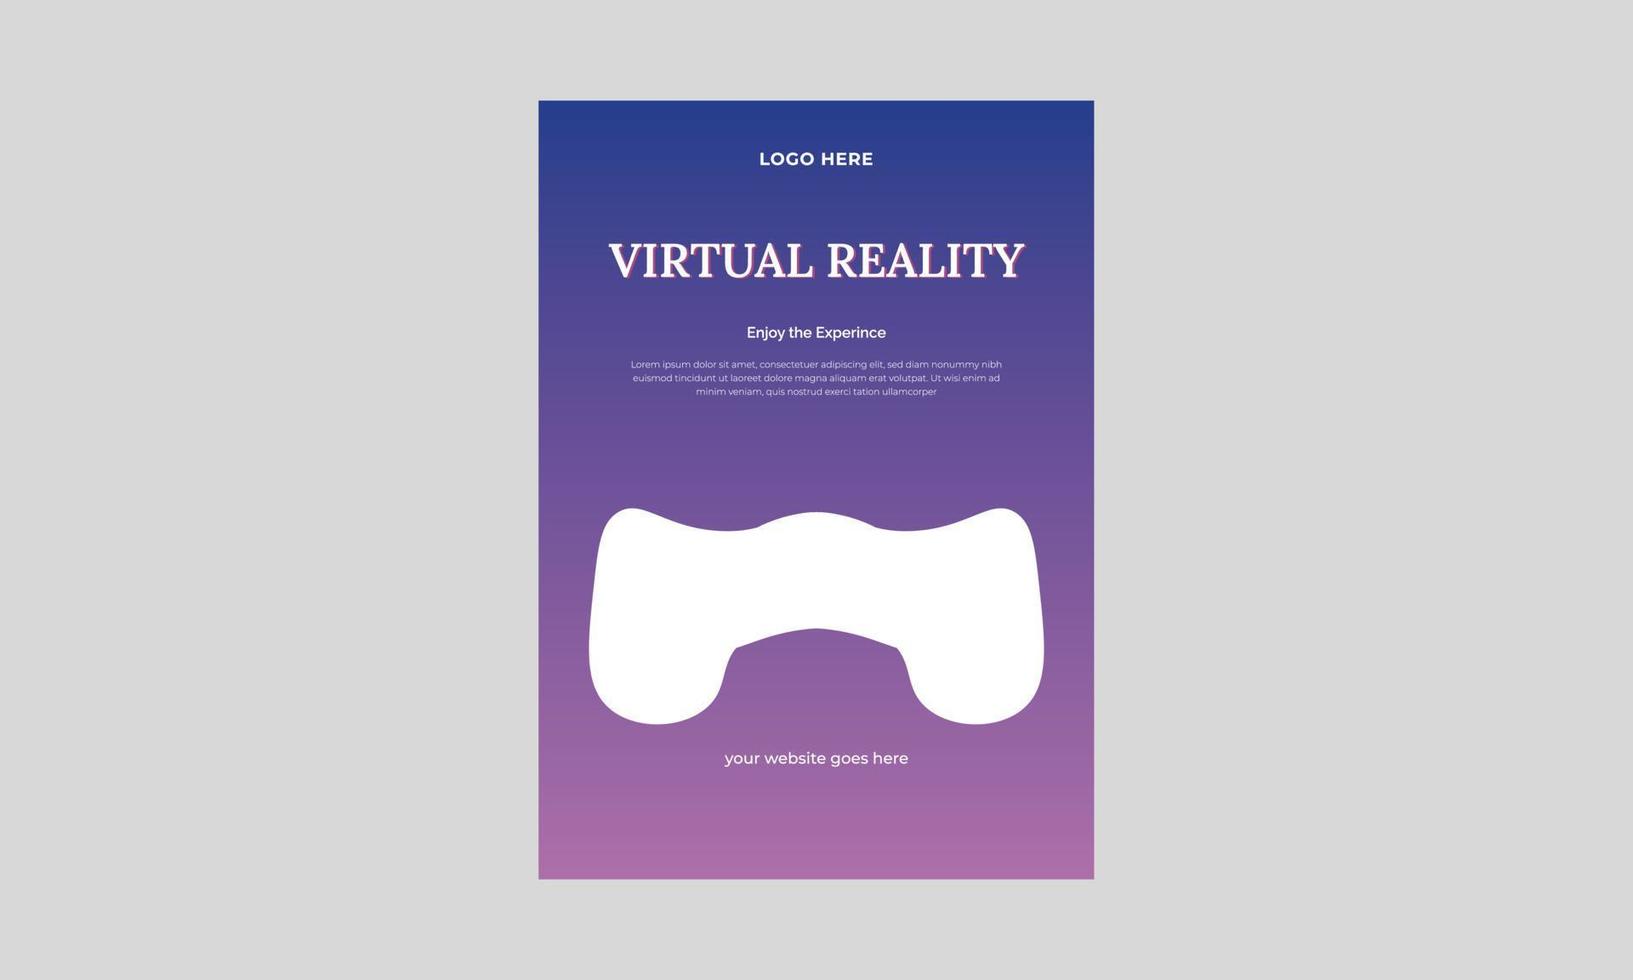 plantilla de volante de realidad virtual, plantilla de diseño de volante de evento vr, plantilla de póster de innovación tecnológica. vector